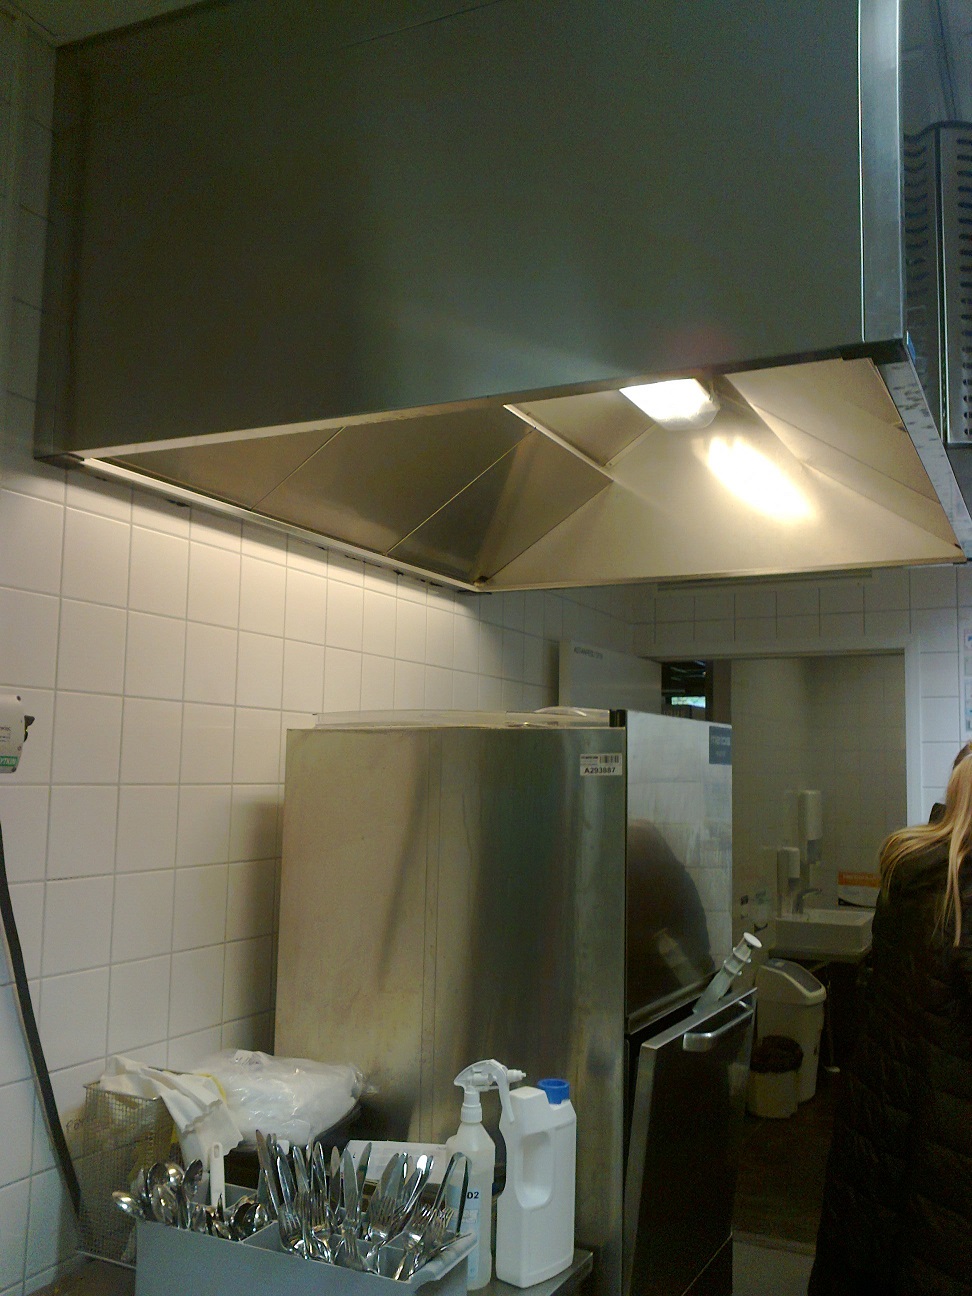 Вытяжной зонт над посудомоечной машиной. Фотография оригинальная, Jeven Финляндия 2014 год.